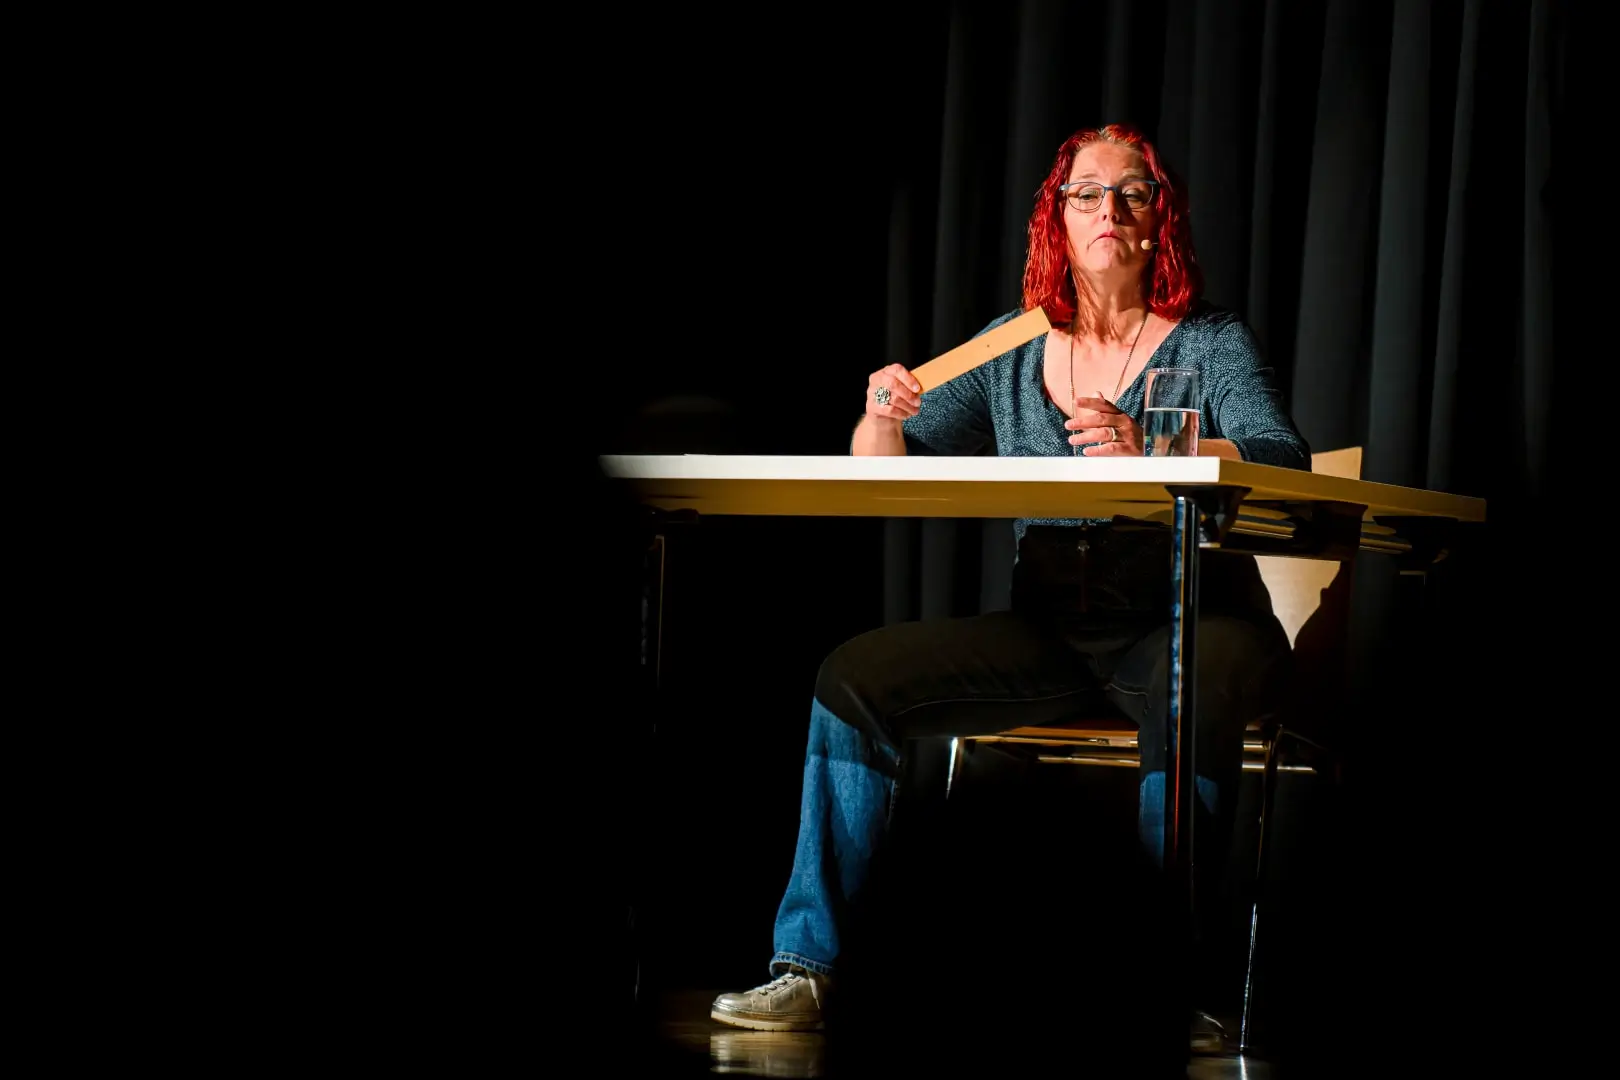 Frau mit roten Haaren hält Holzlöffel auf Bühne.